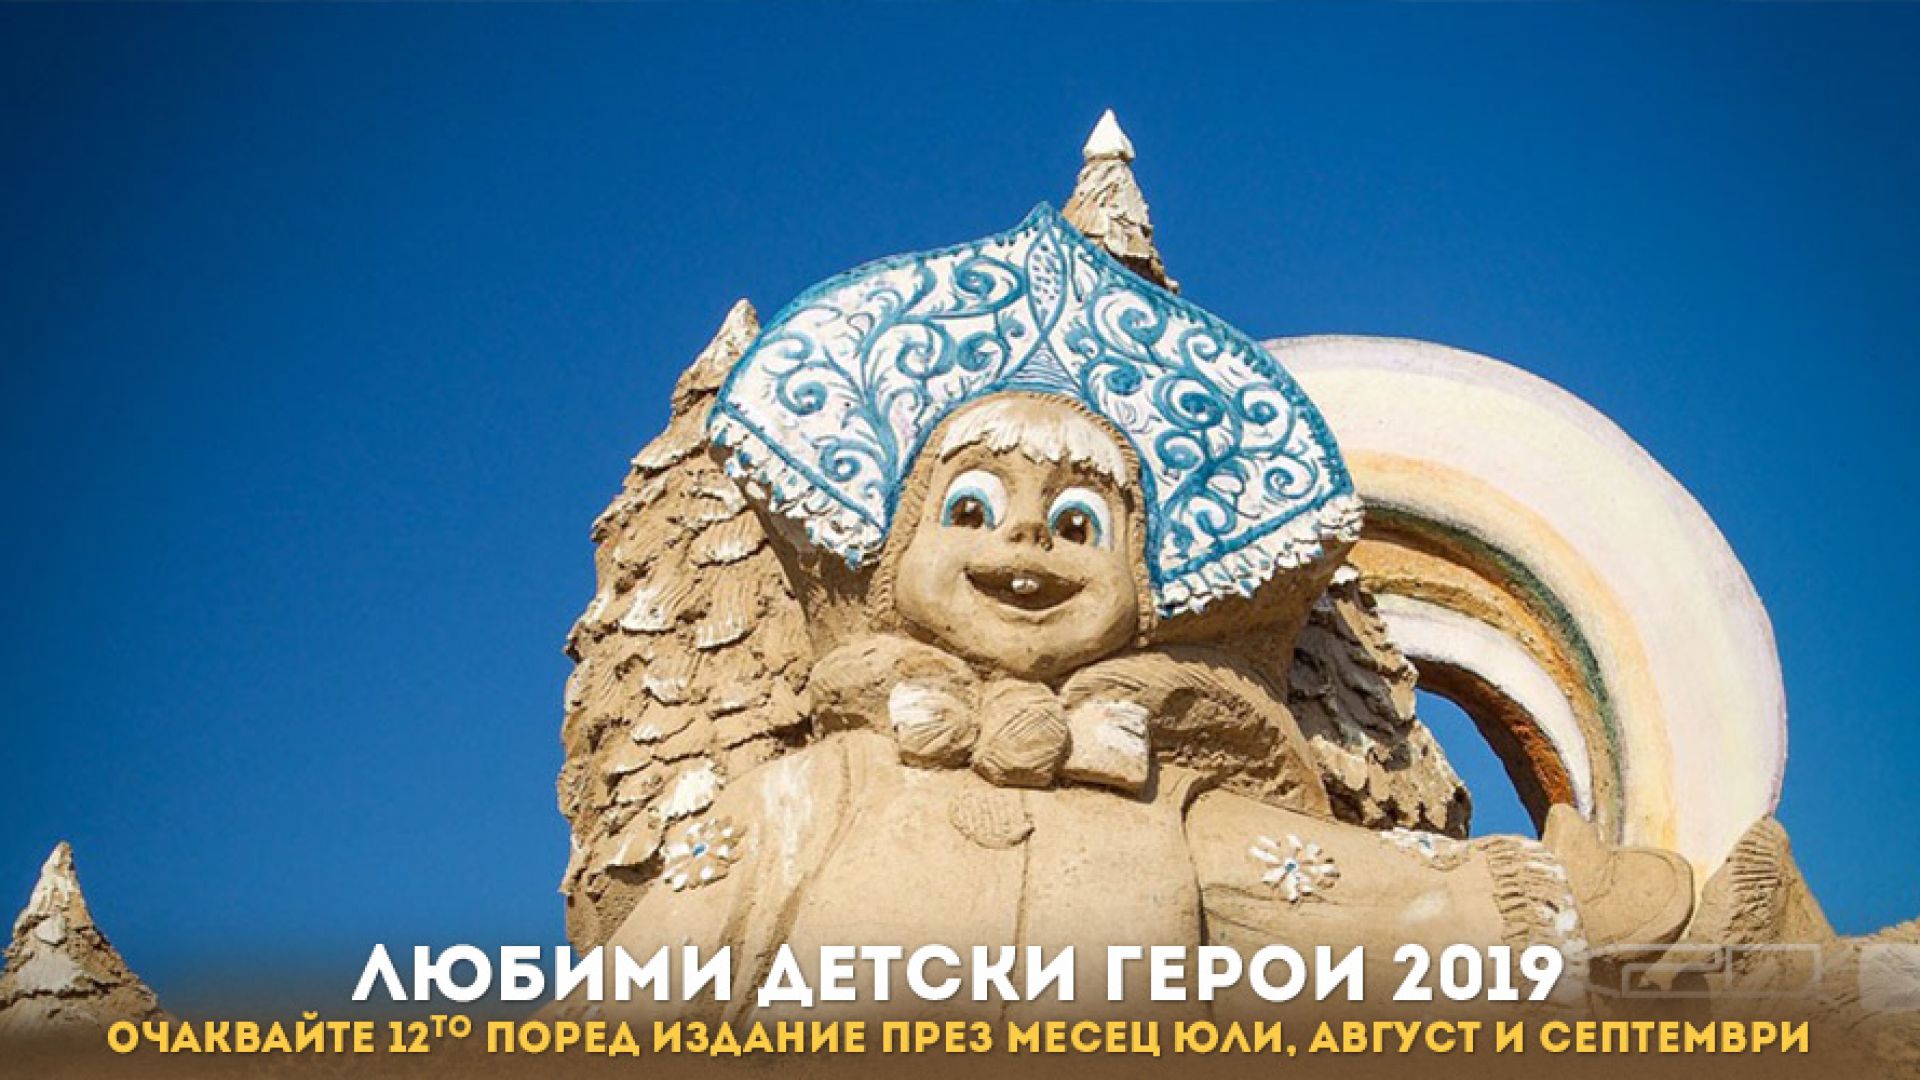 12 то издание на Фестивала на пясъчните скулптури в Бургас ще